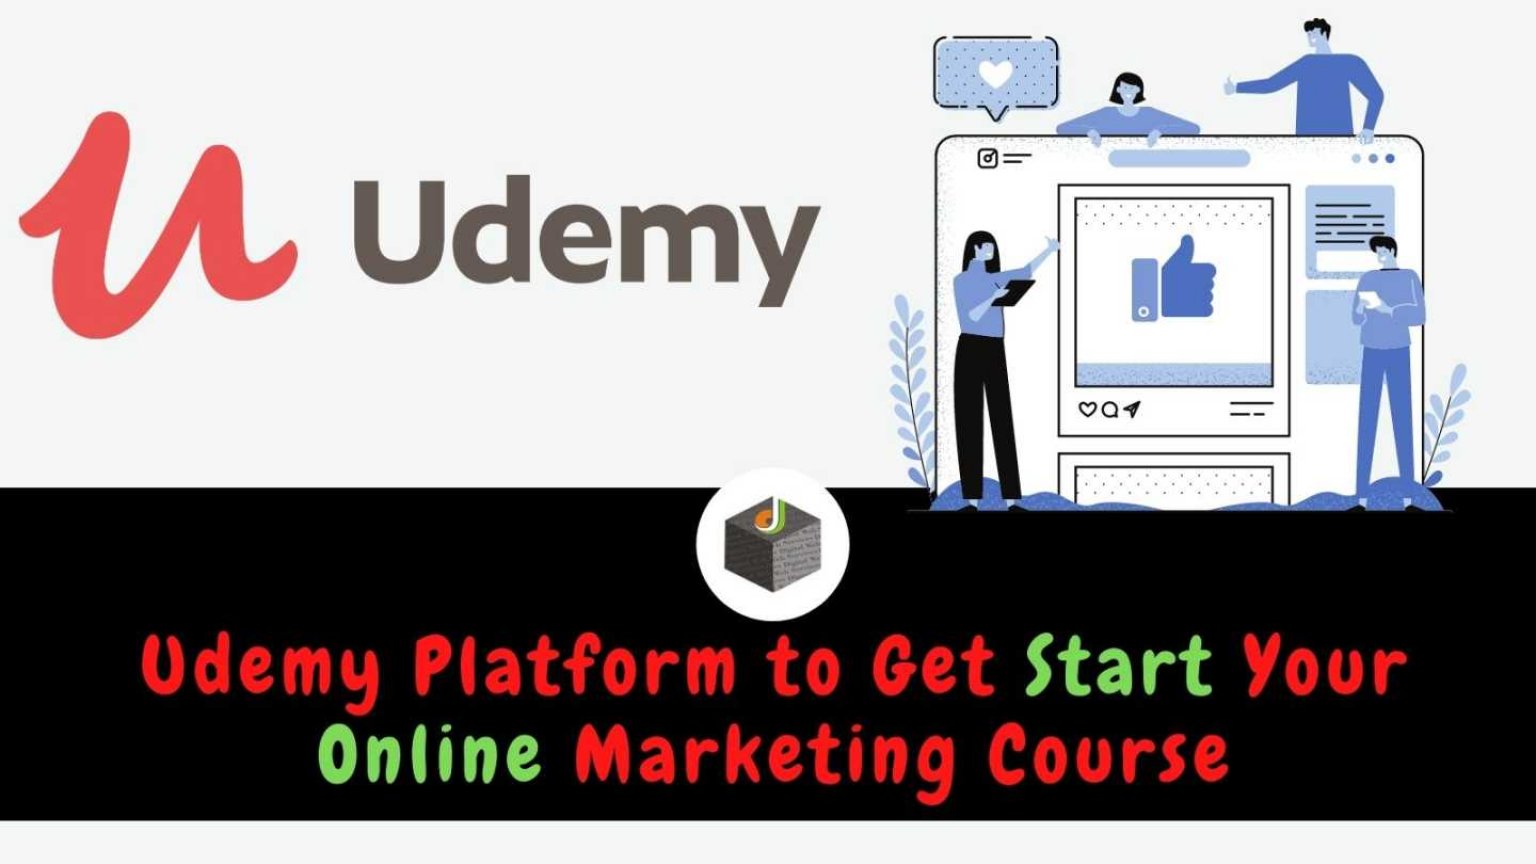 Udemy Platform For Online Marketing Course - Digital Web Services